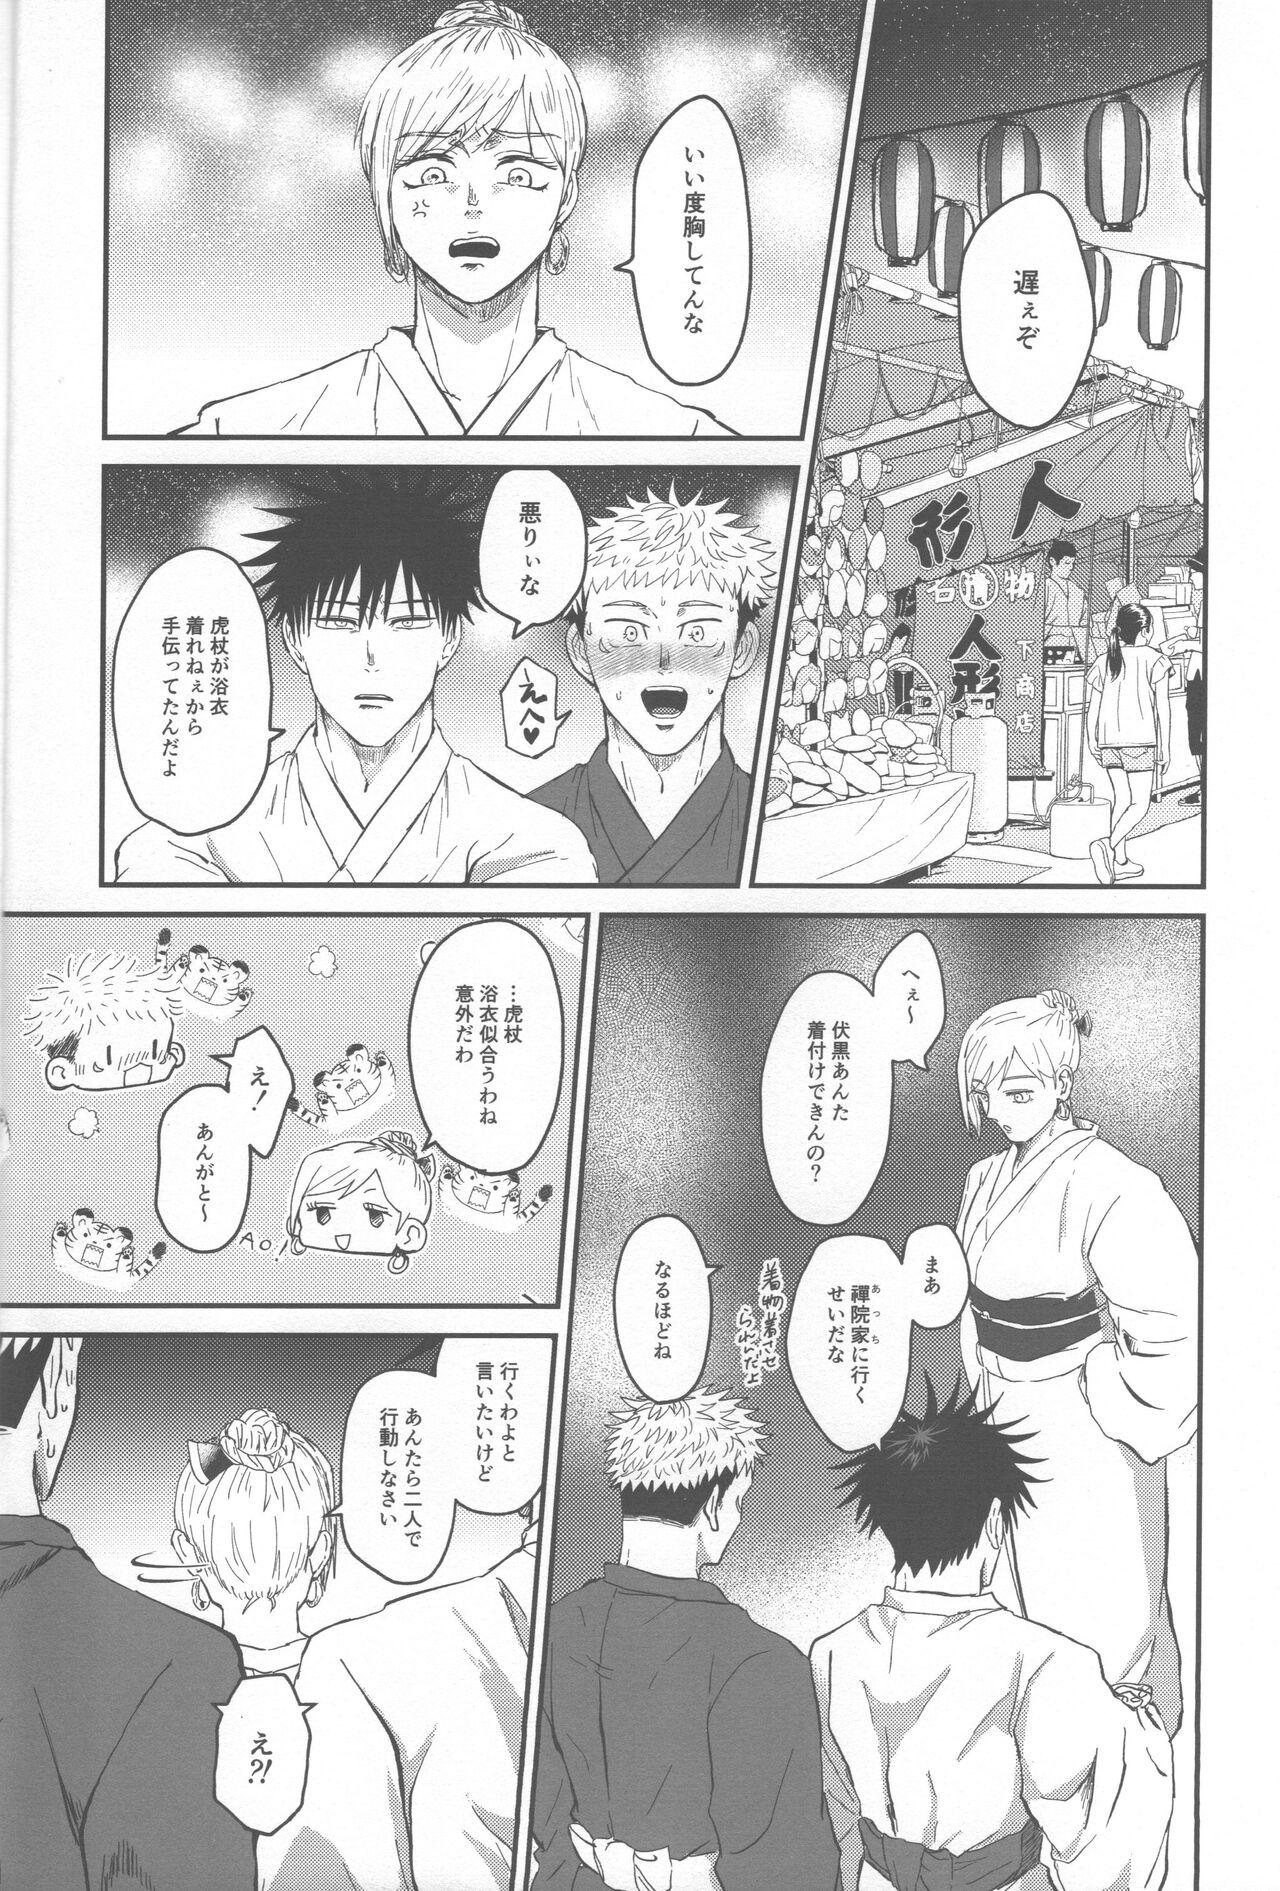 Pigtails Netsu wo obi bu - Jujutsu kaisen She - Page 7